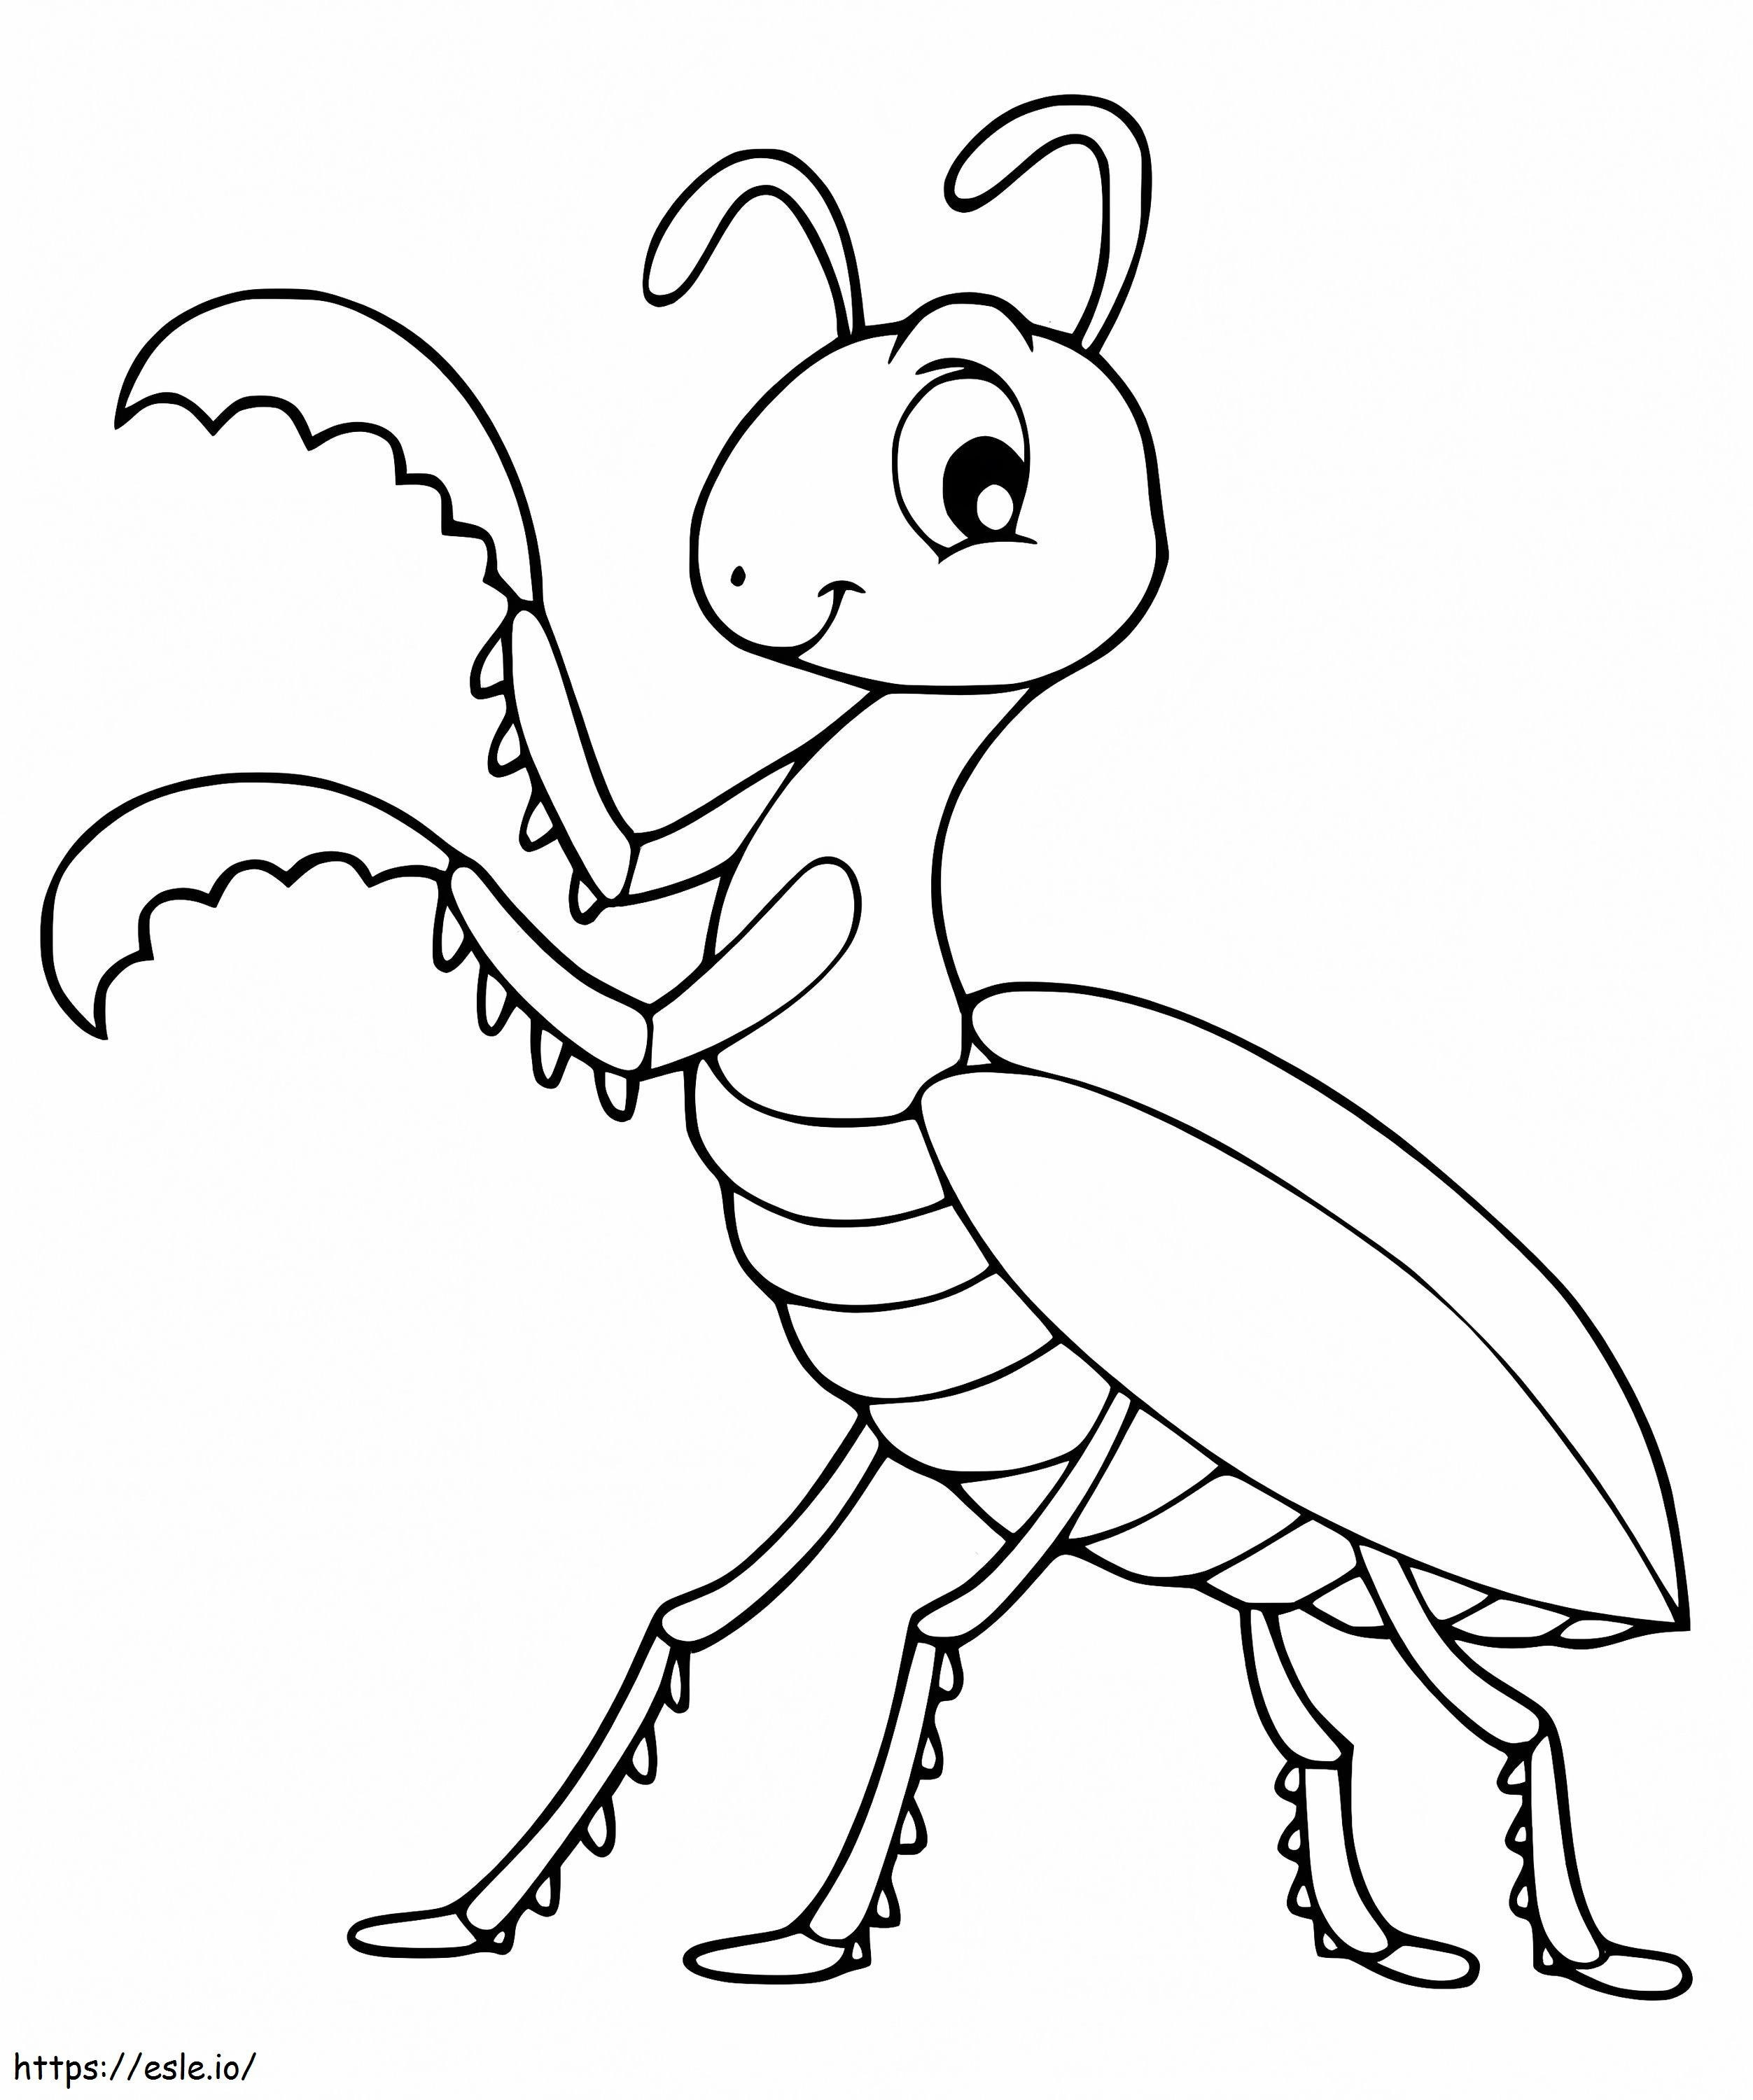 Happy Praying Mantis coloring page